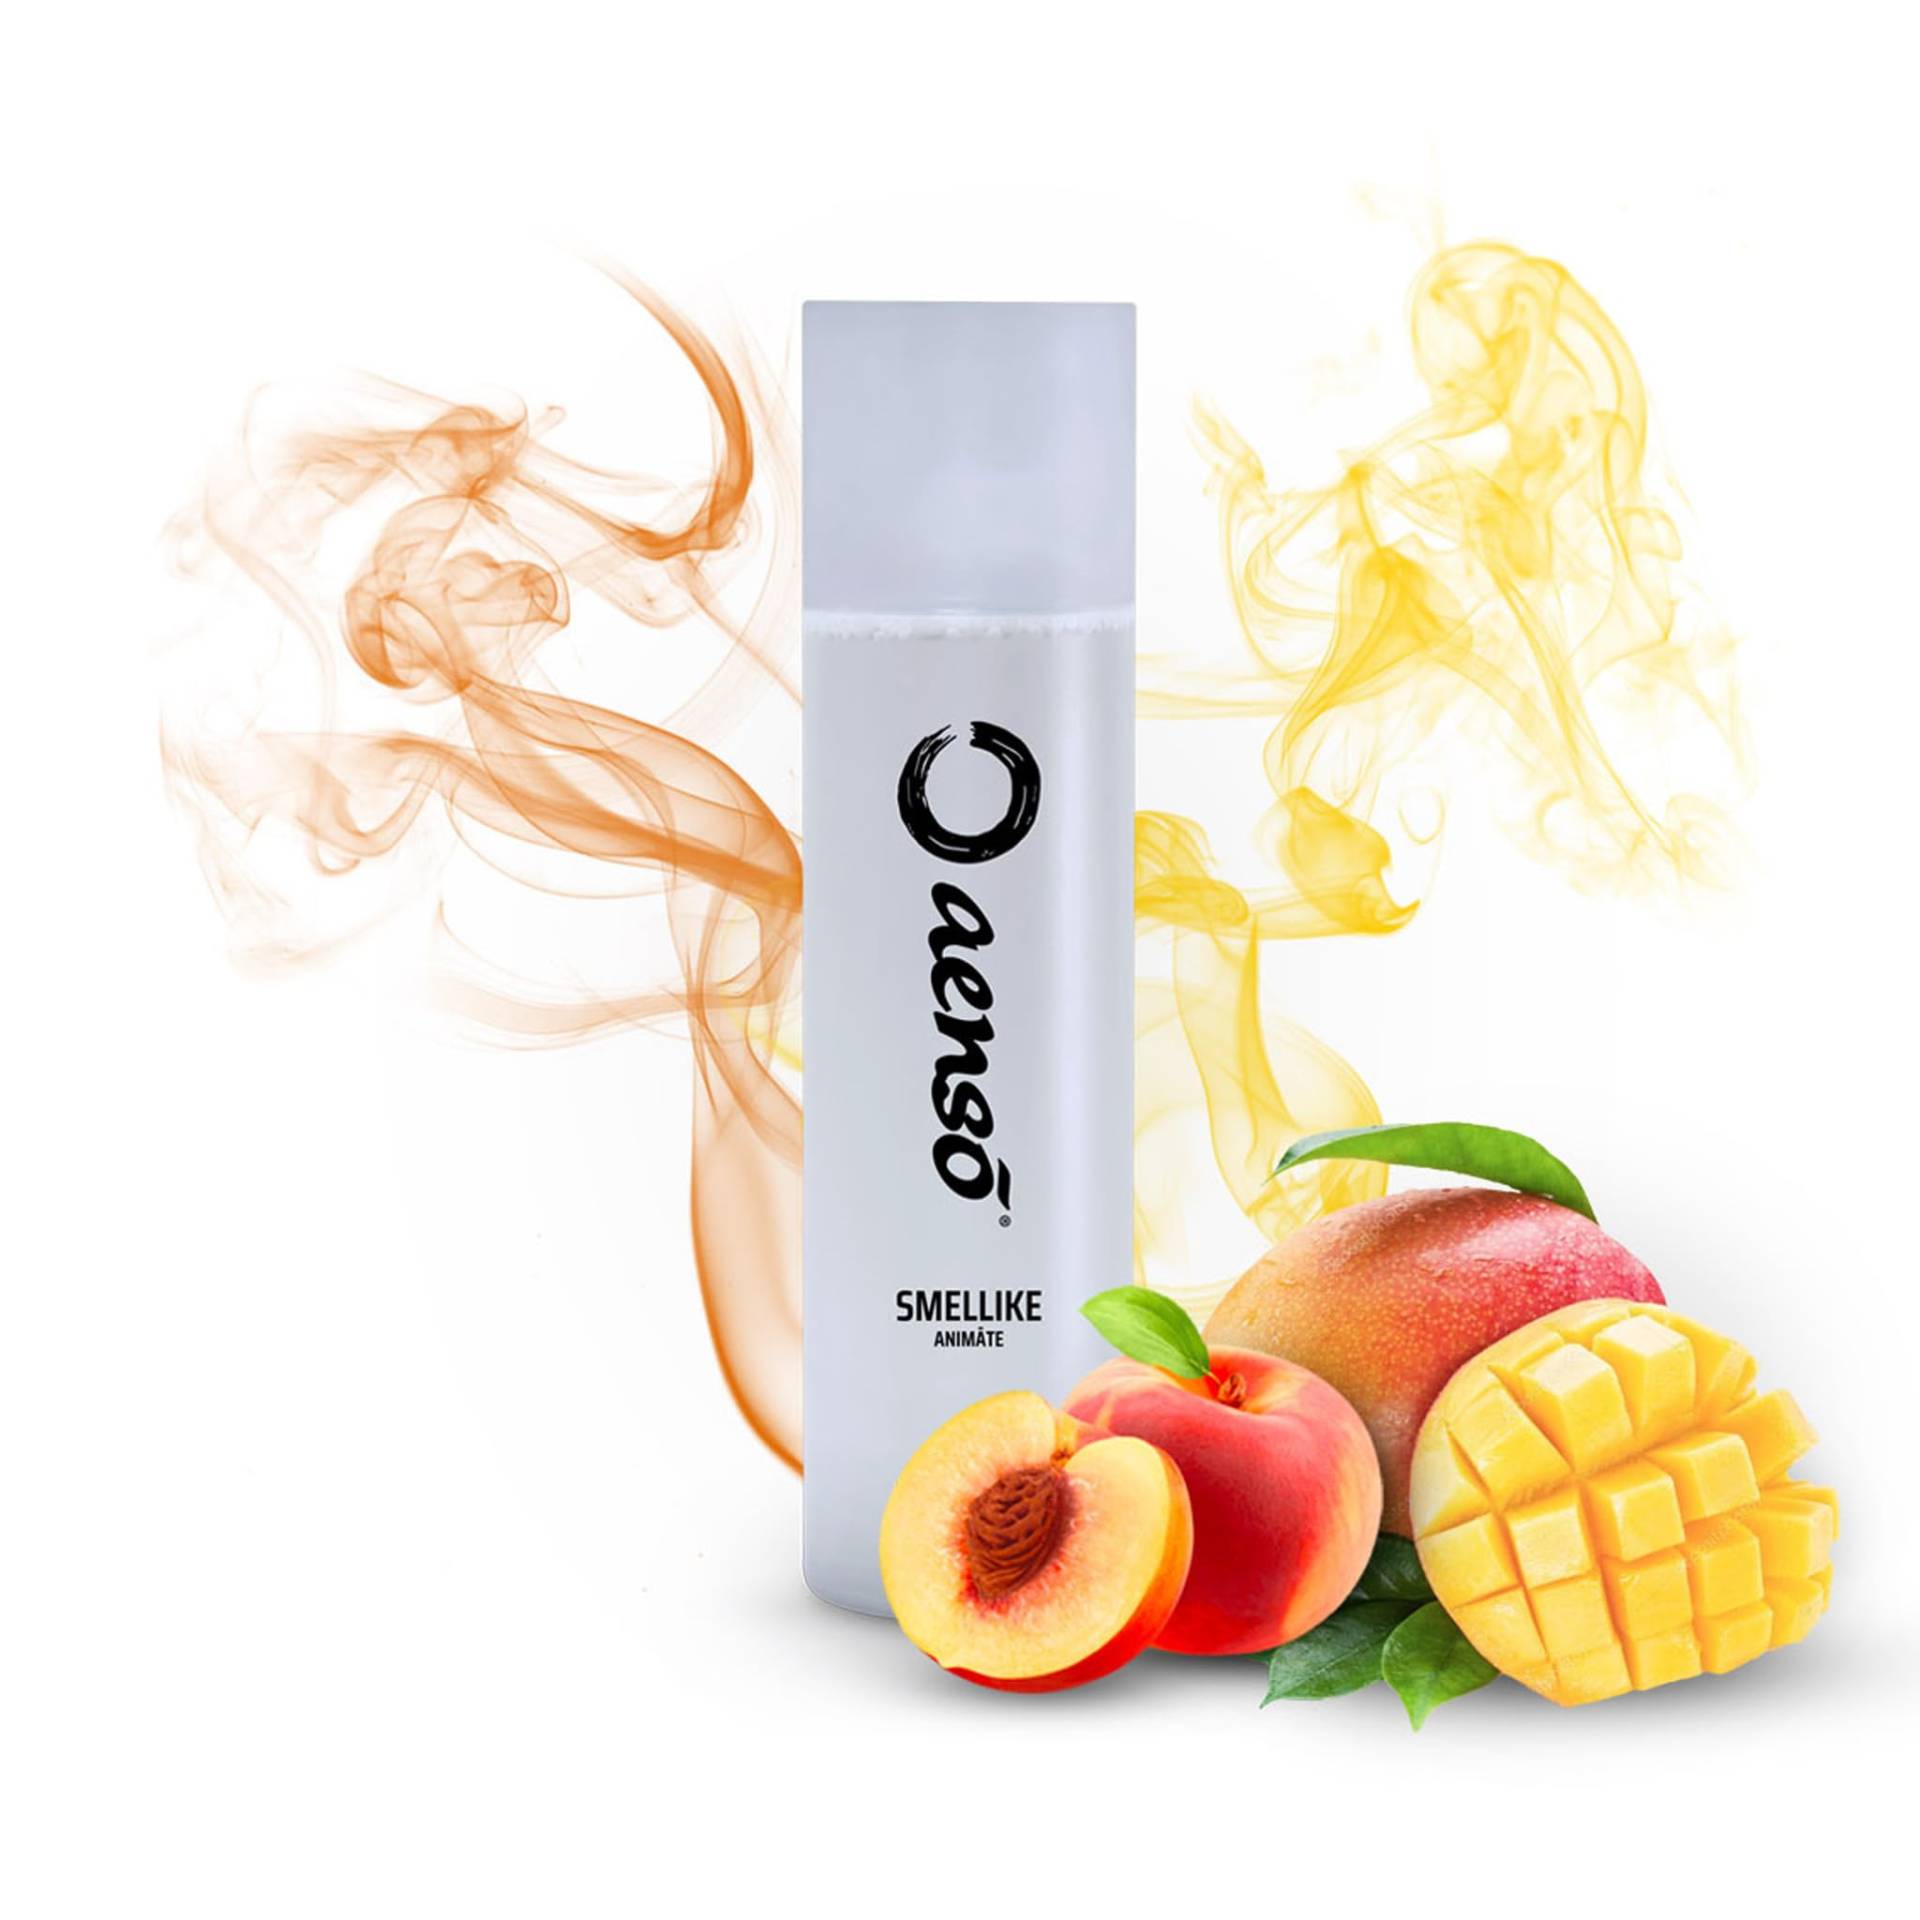 Aenso - Smellike Animate Lufterfrischer (500ml) Mango & Pfirsich Duft für dein Auto. Autoparfum, Autoduft, Duftspray von aenso